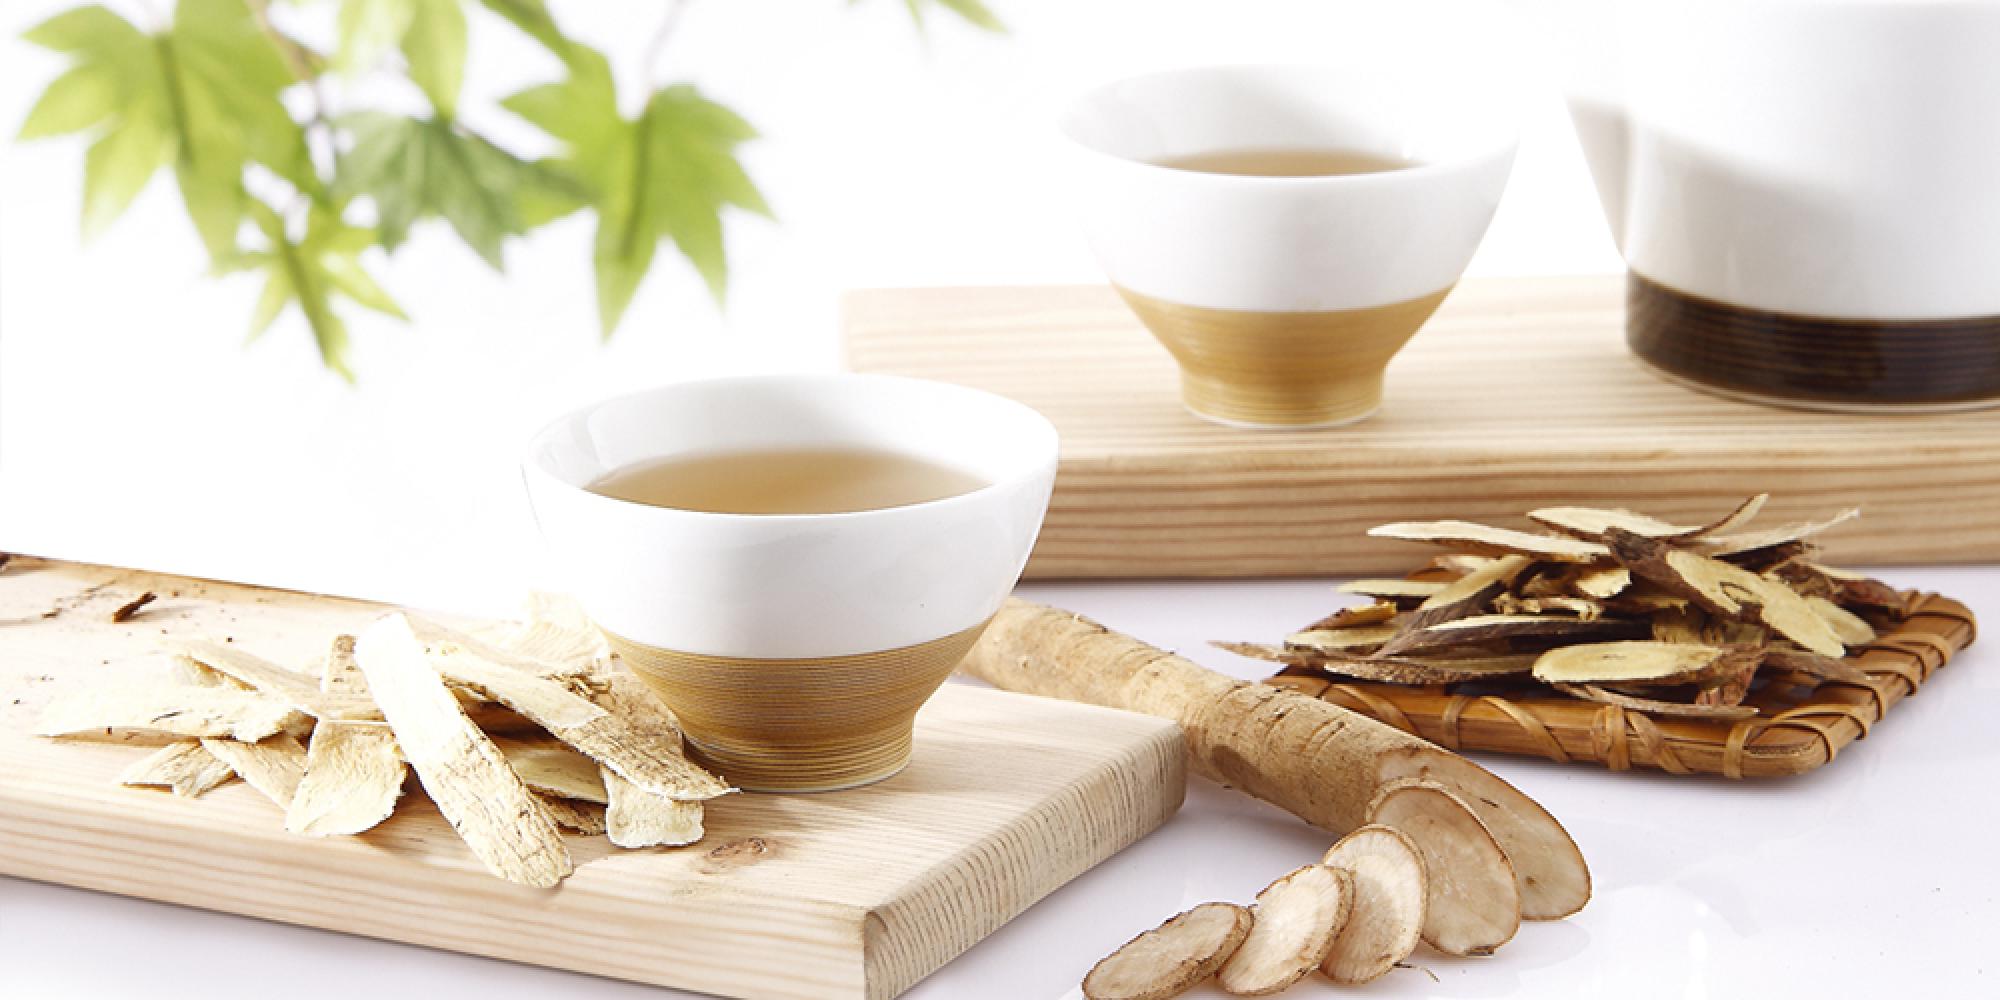 青玉牛蒡茶 全系列產品